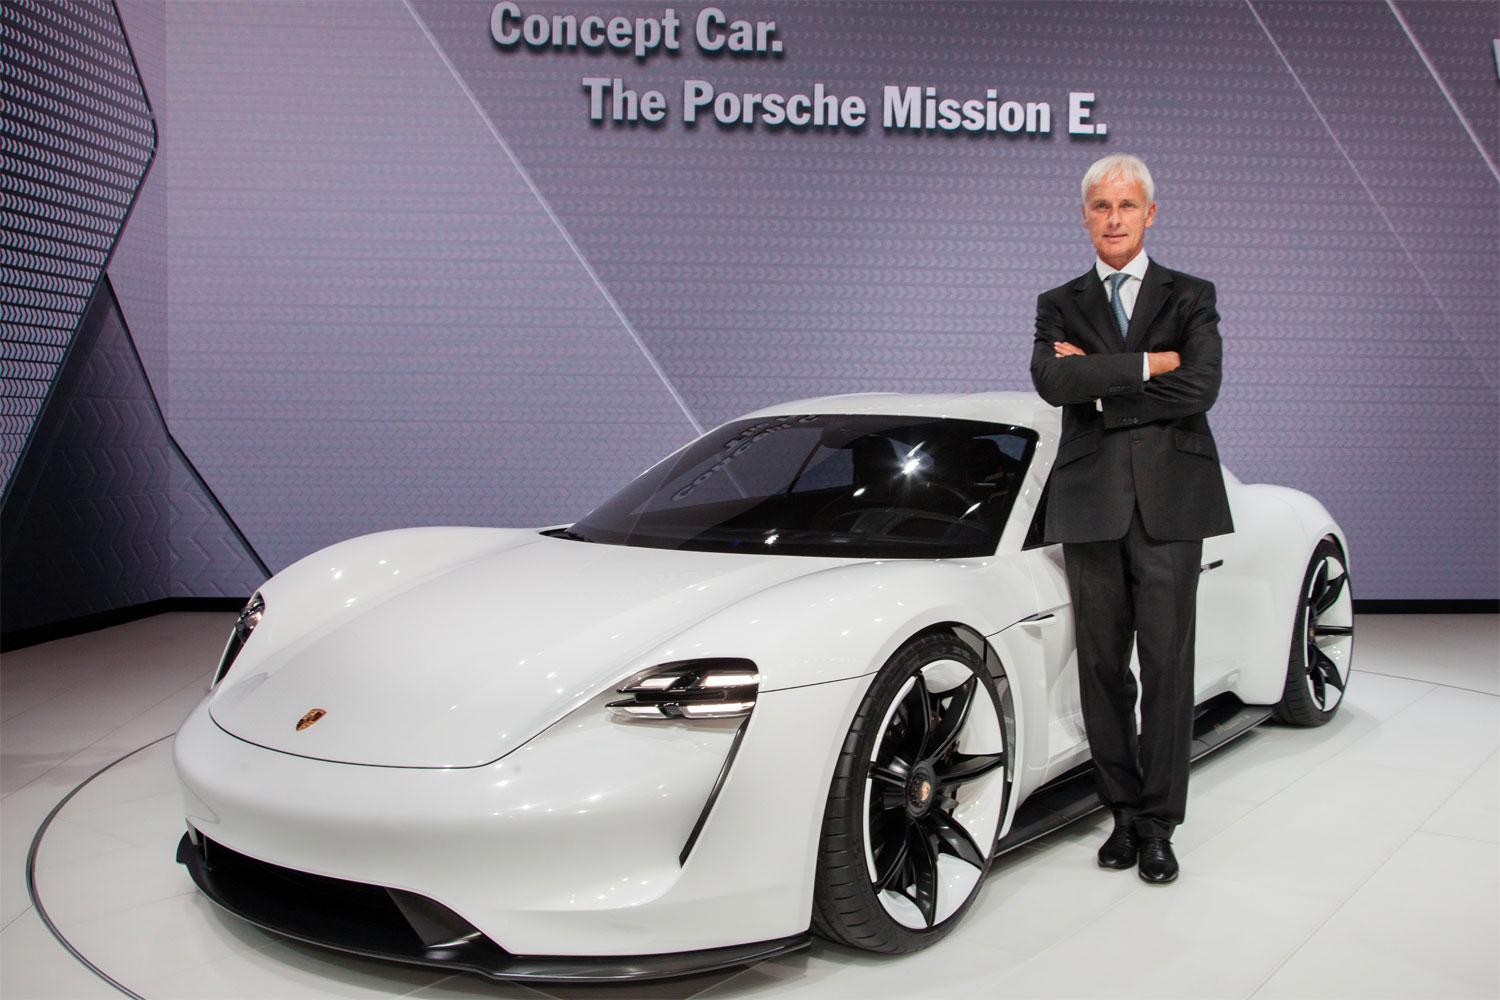 Porsches eldrivna coupé Mission E fick mycket uppmärksamhet när det visades.